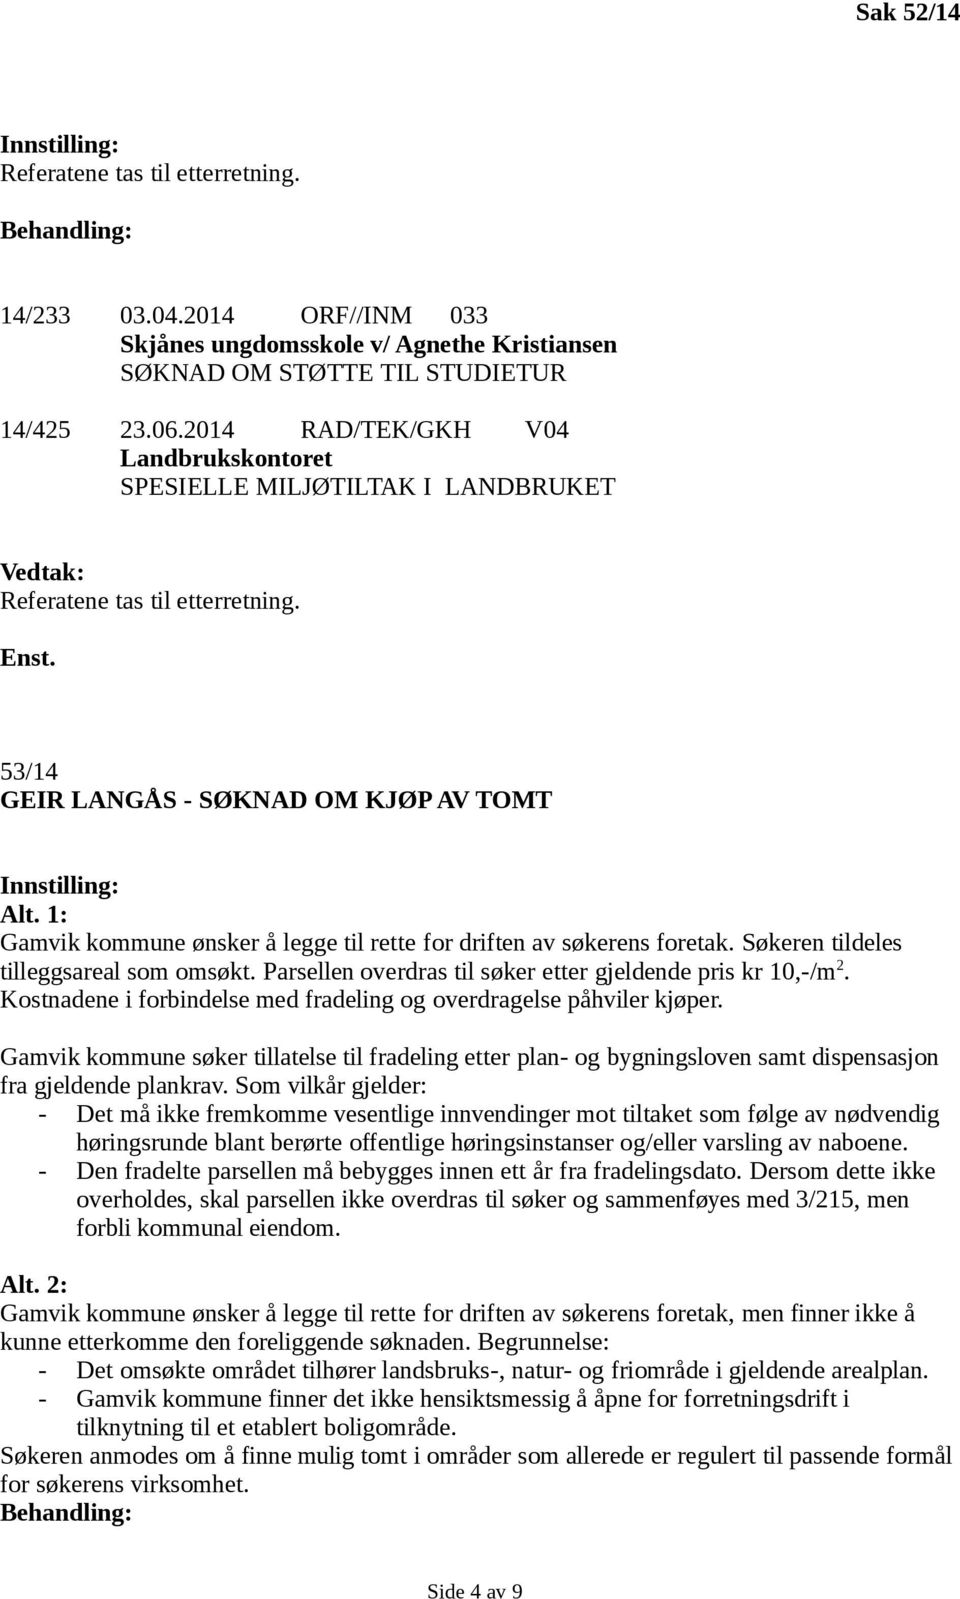 1: Gamvik kommune ønsker å legge til rette for driften av søkerens foretak. Søkeren tildeles tilleggsareal som omsøkt. Parsellen overdras til søker etter gjeldende pris kr 10,-/m 2.